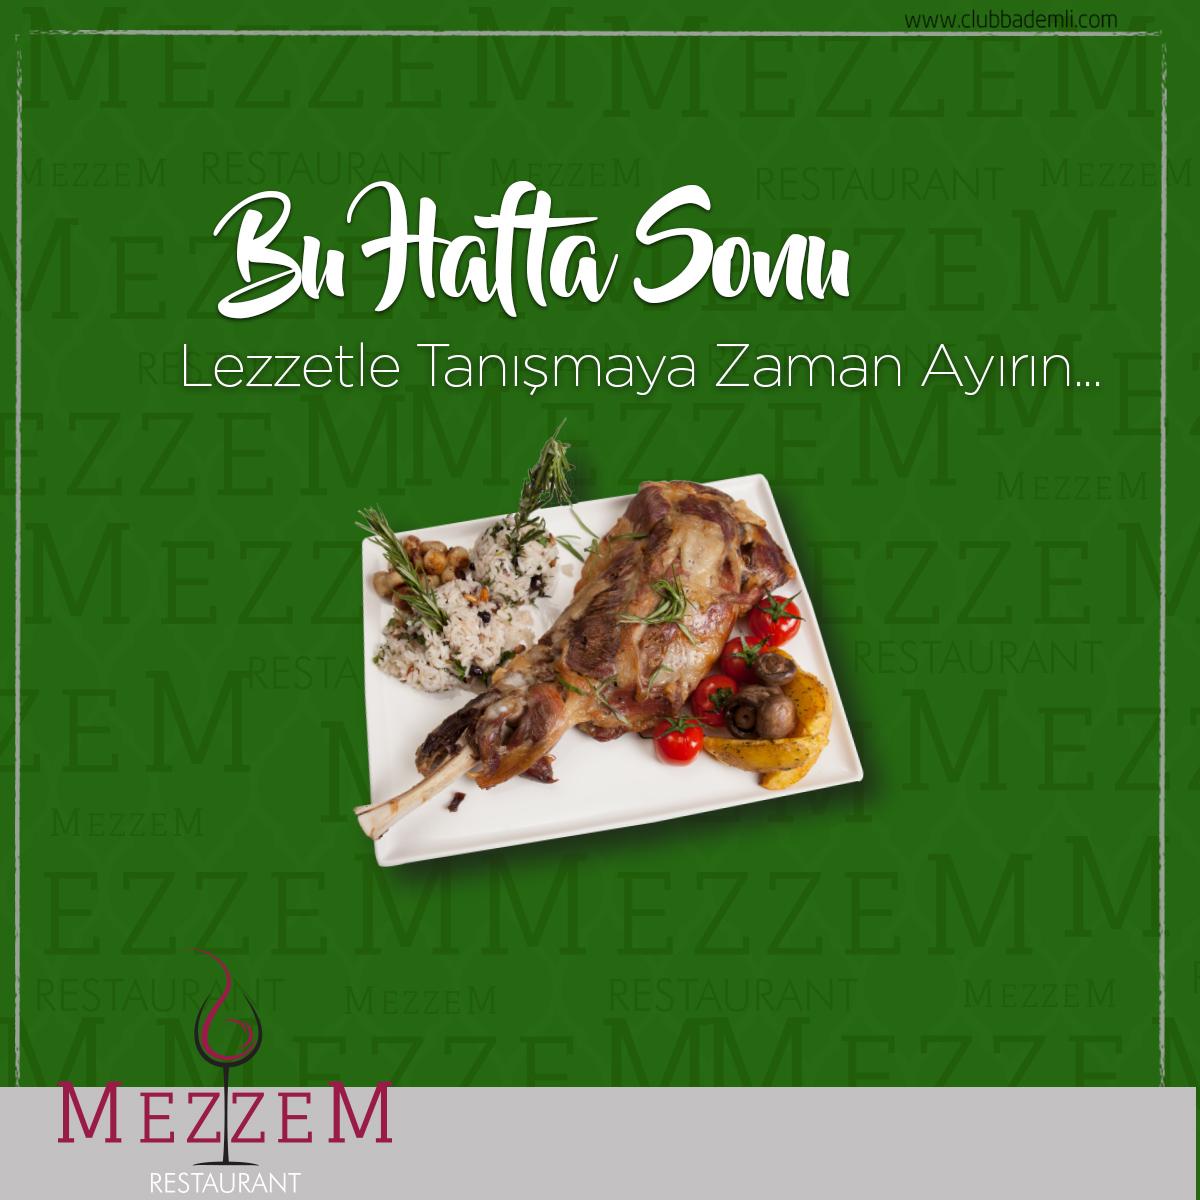 Mezzem Restaurant Sosyal Medya Çalışması